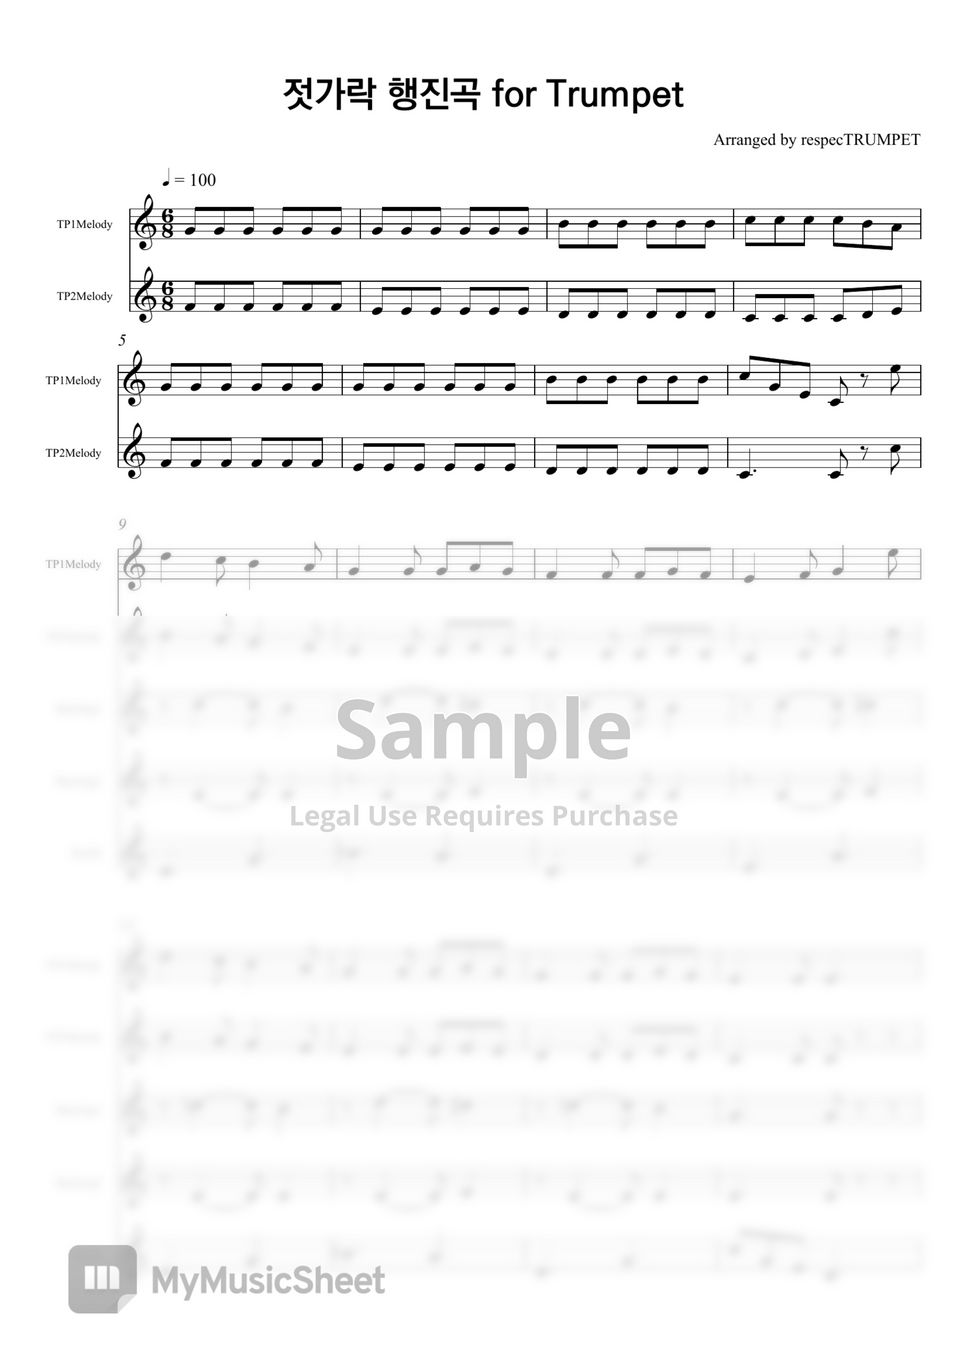 유피미아 앨런 - 젓가락 행진곡 (Bb 트럼펫 앙상블) by 리스펙트럼펫